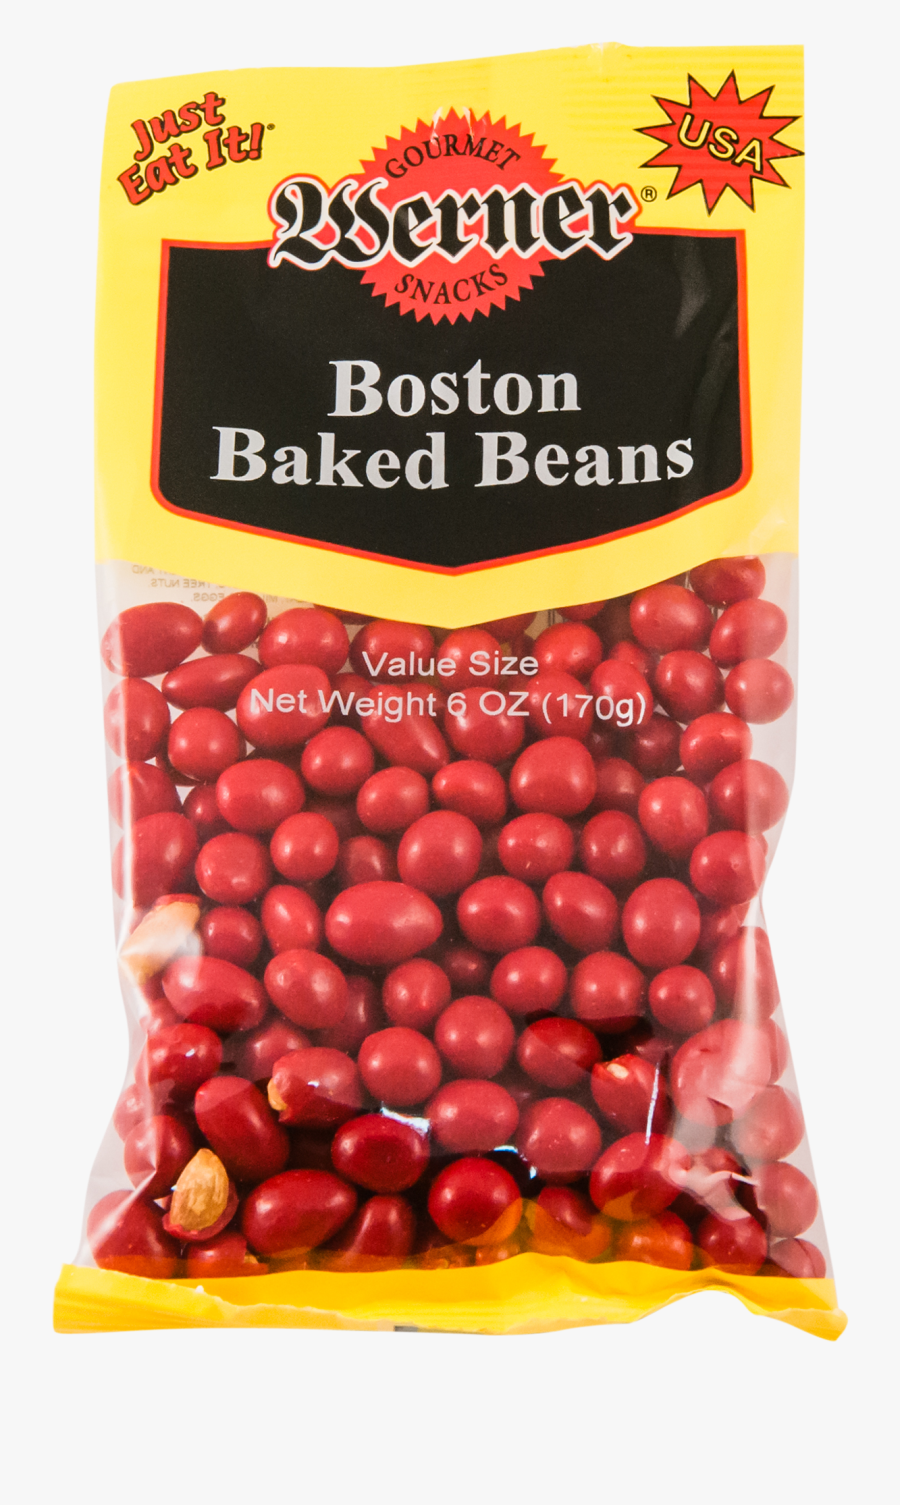 Boston Baked Beans - Boston Baked Beans Snack, Transparent Clipart